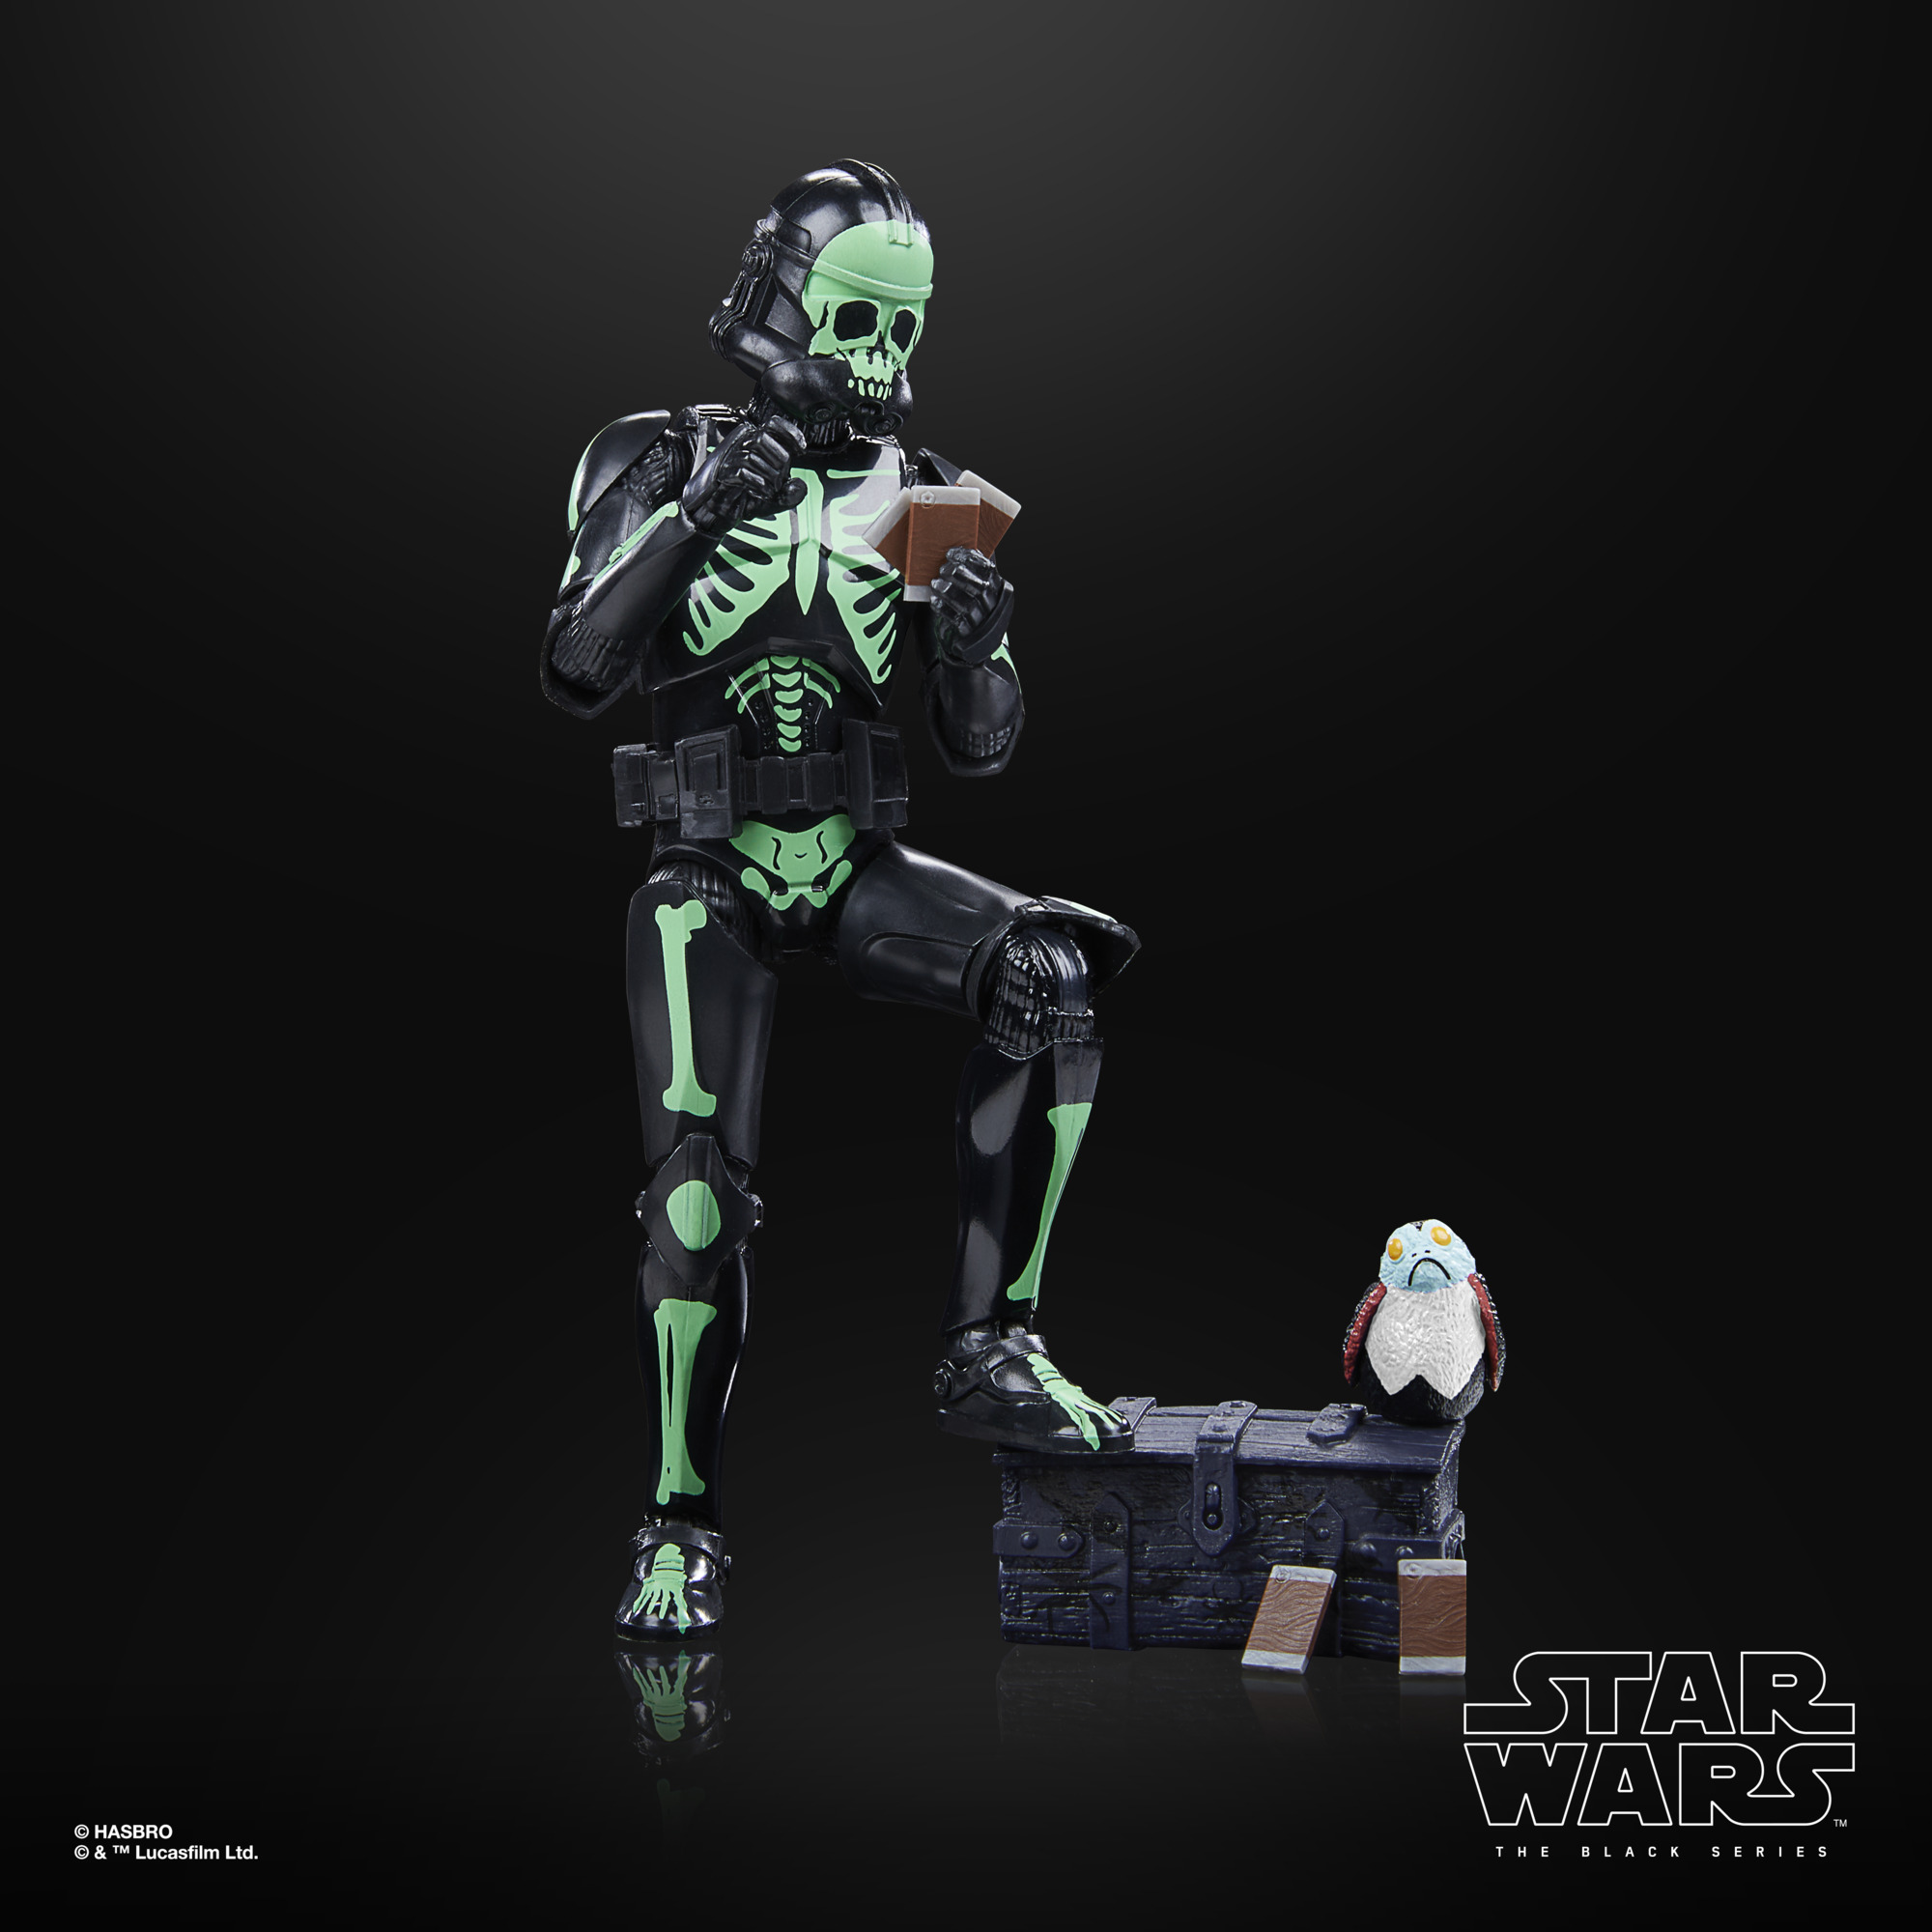 VP leicht beschädigt!!! Star Wars The Black Series Clone Trooper (Halloween Edition) F56085L00 5010994166410